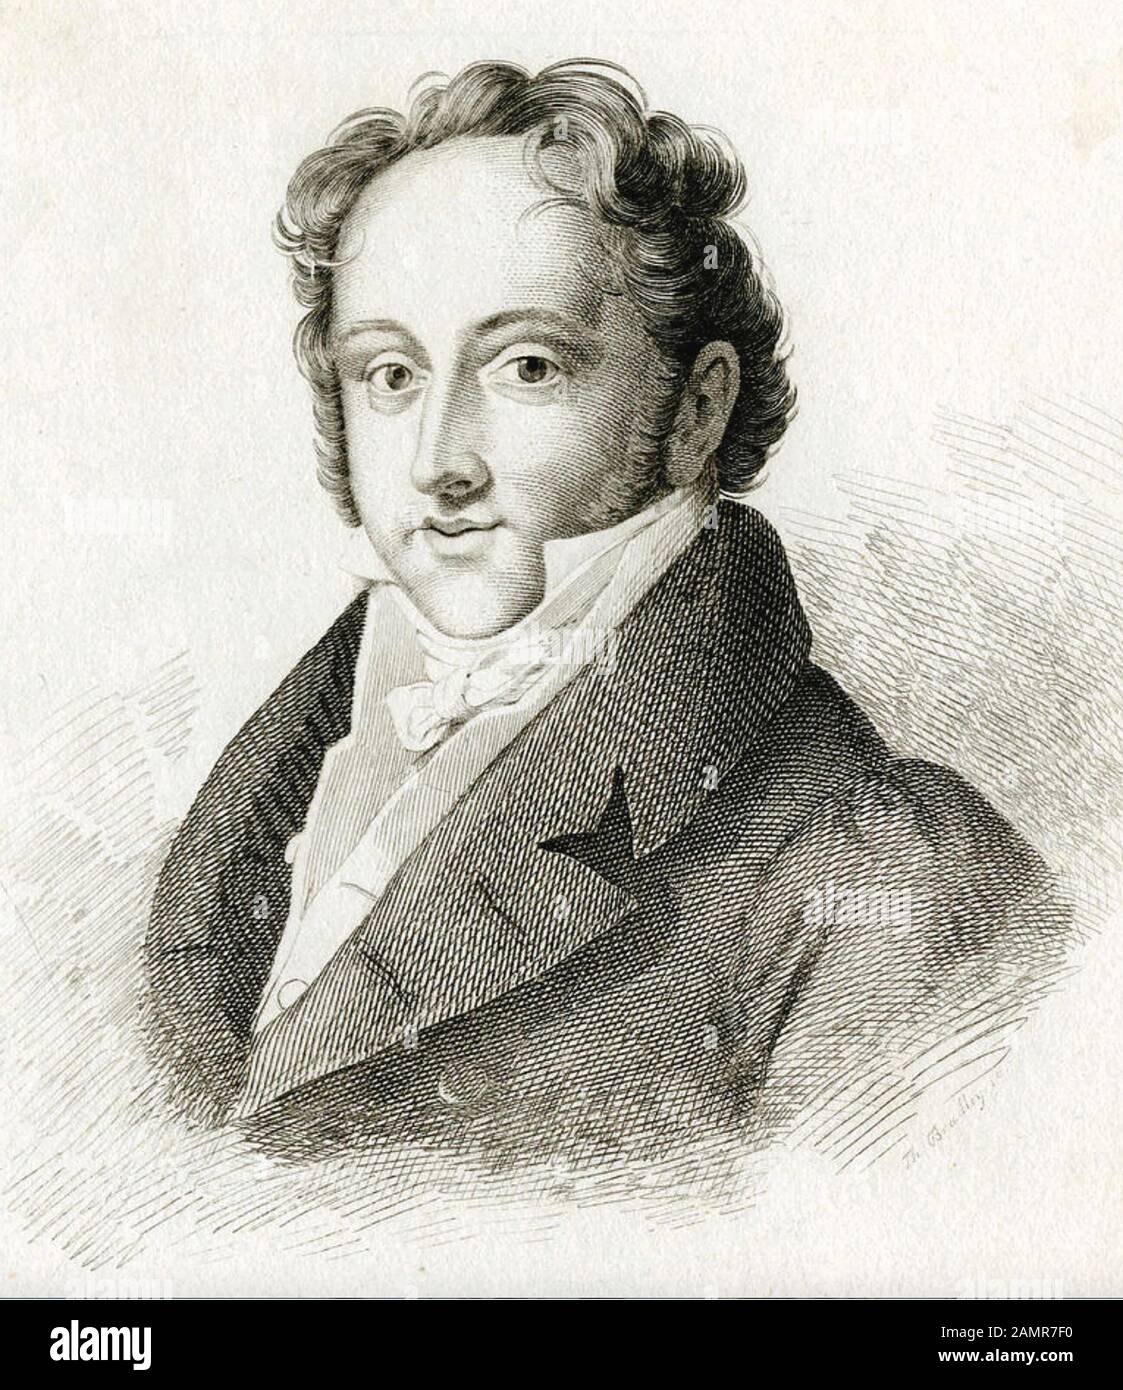 GIOACHINO ROSSINI (1792-1868) Italian opera composer, about 1825 Stock Photo